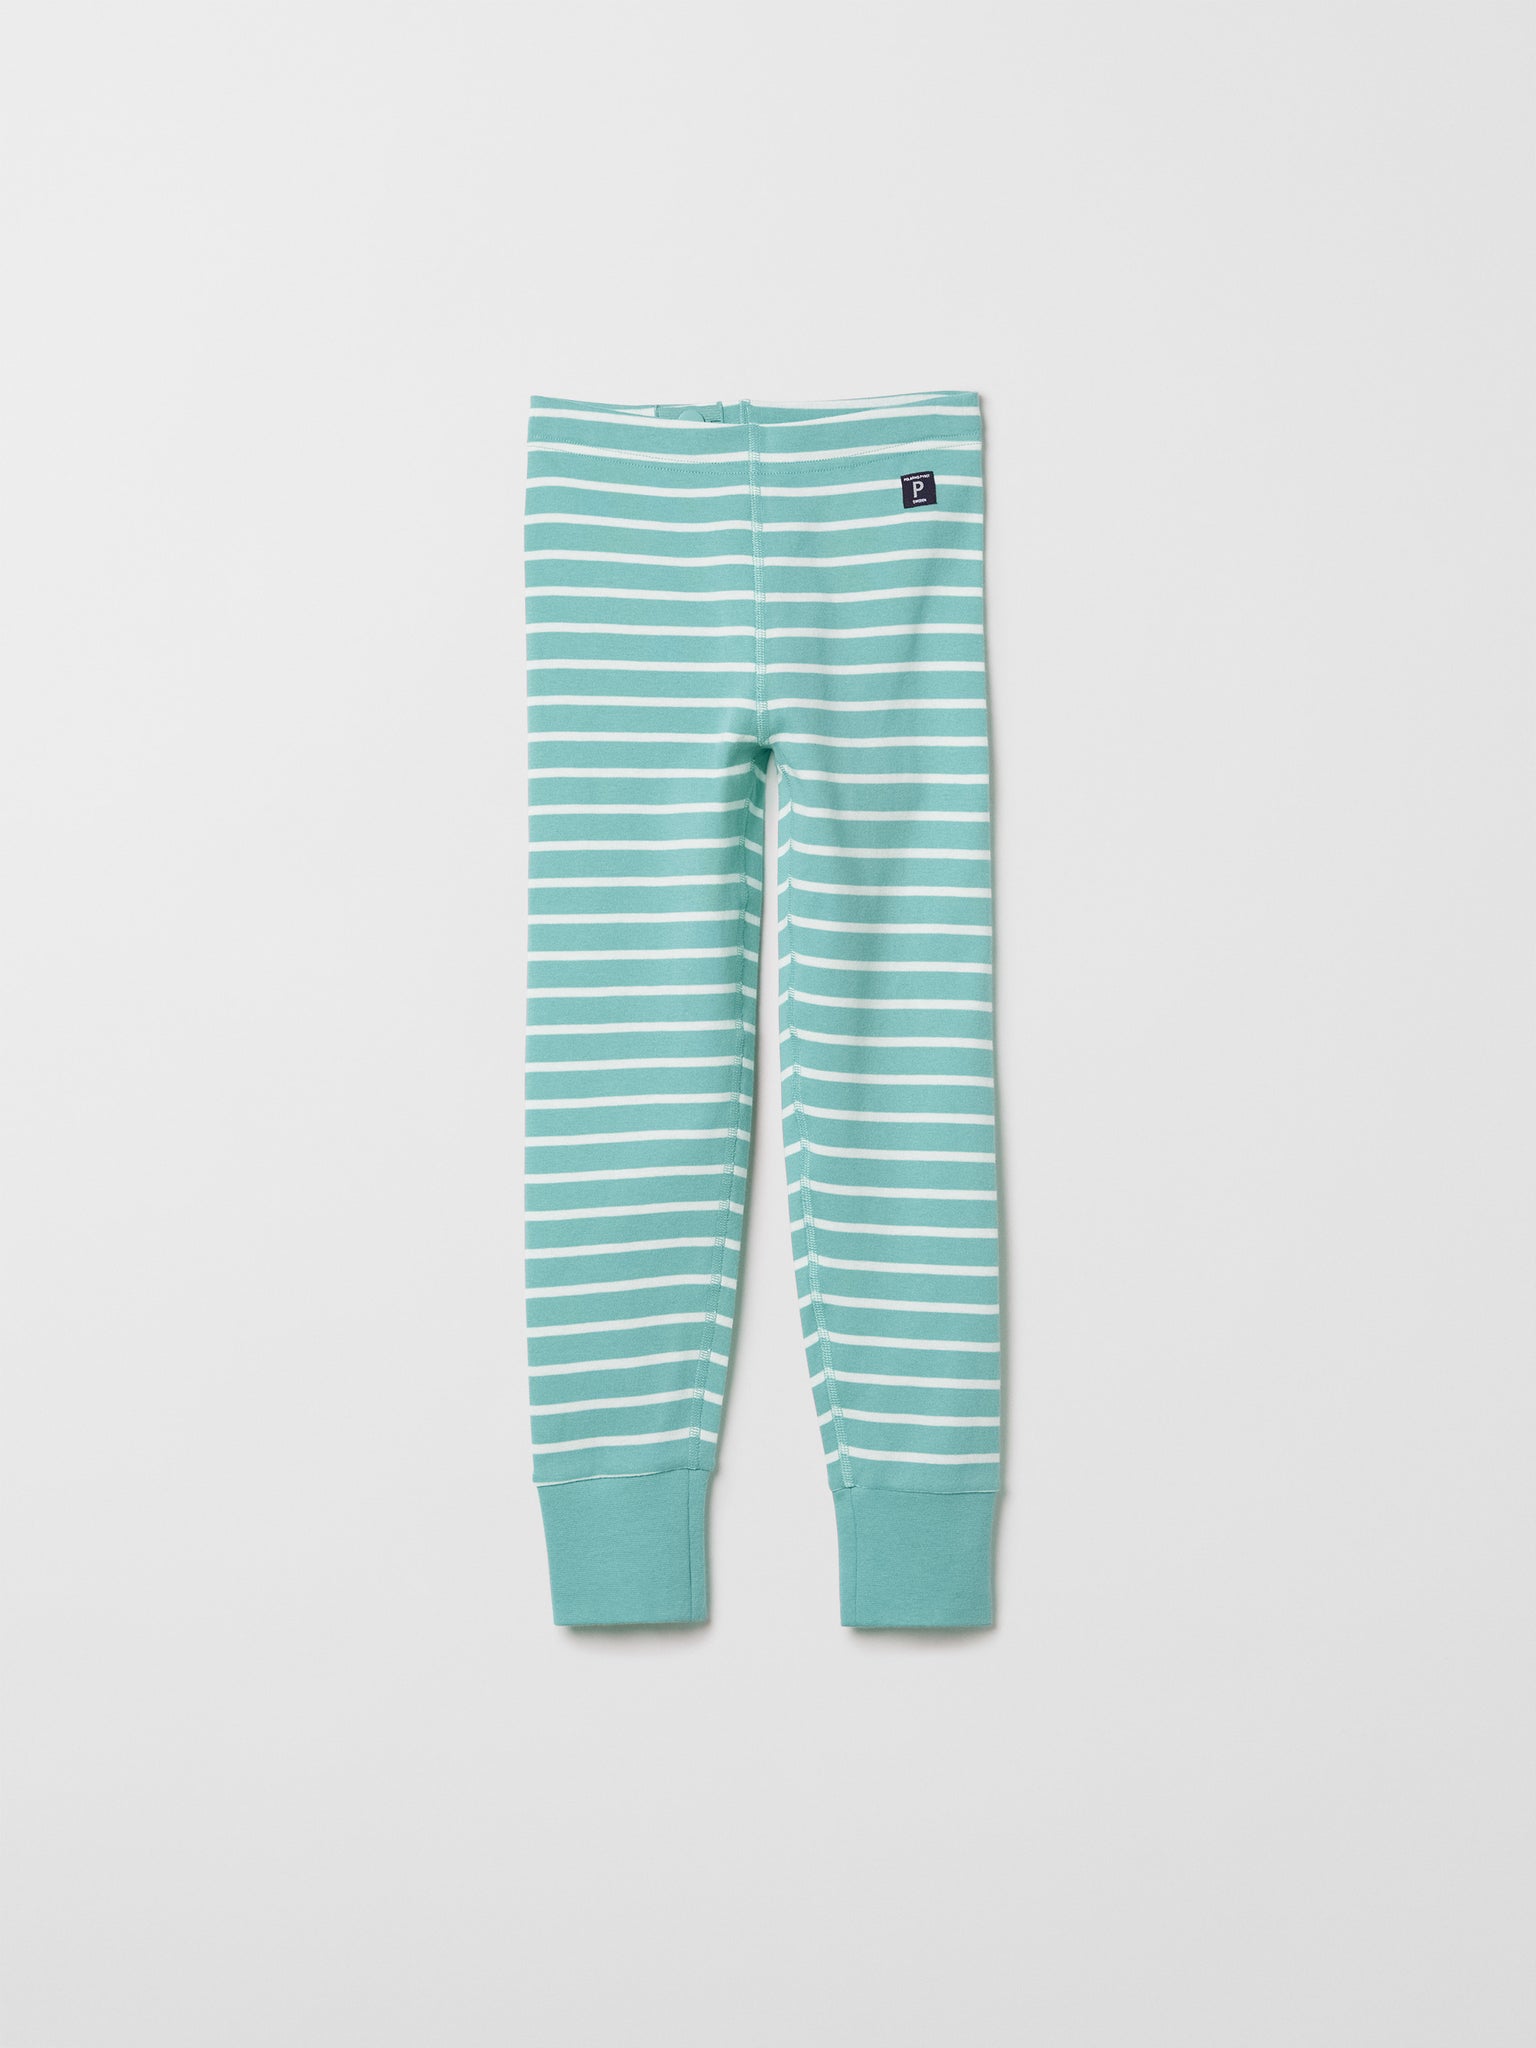 Striped Turquoise Kids Leggings | Polarn O. Pyret UK